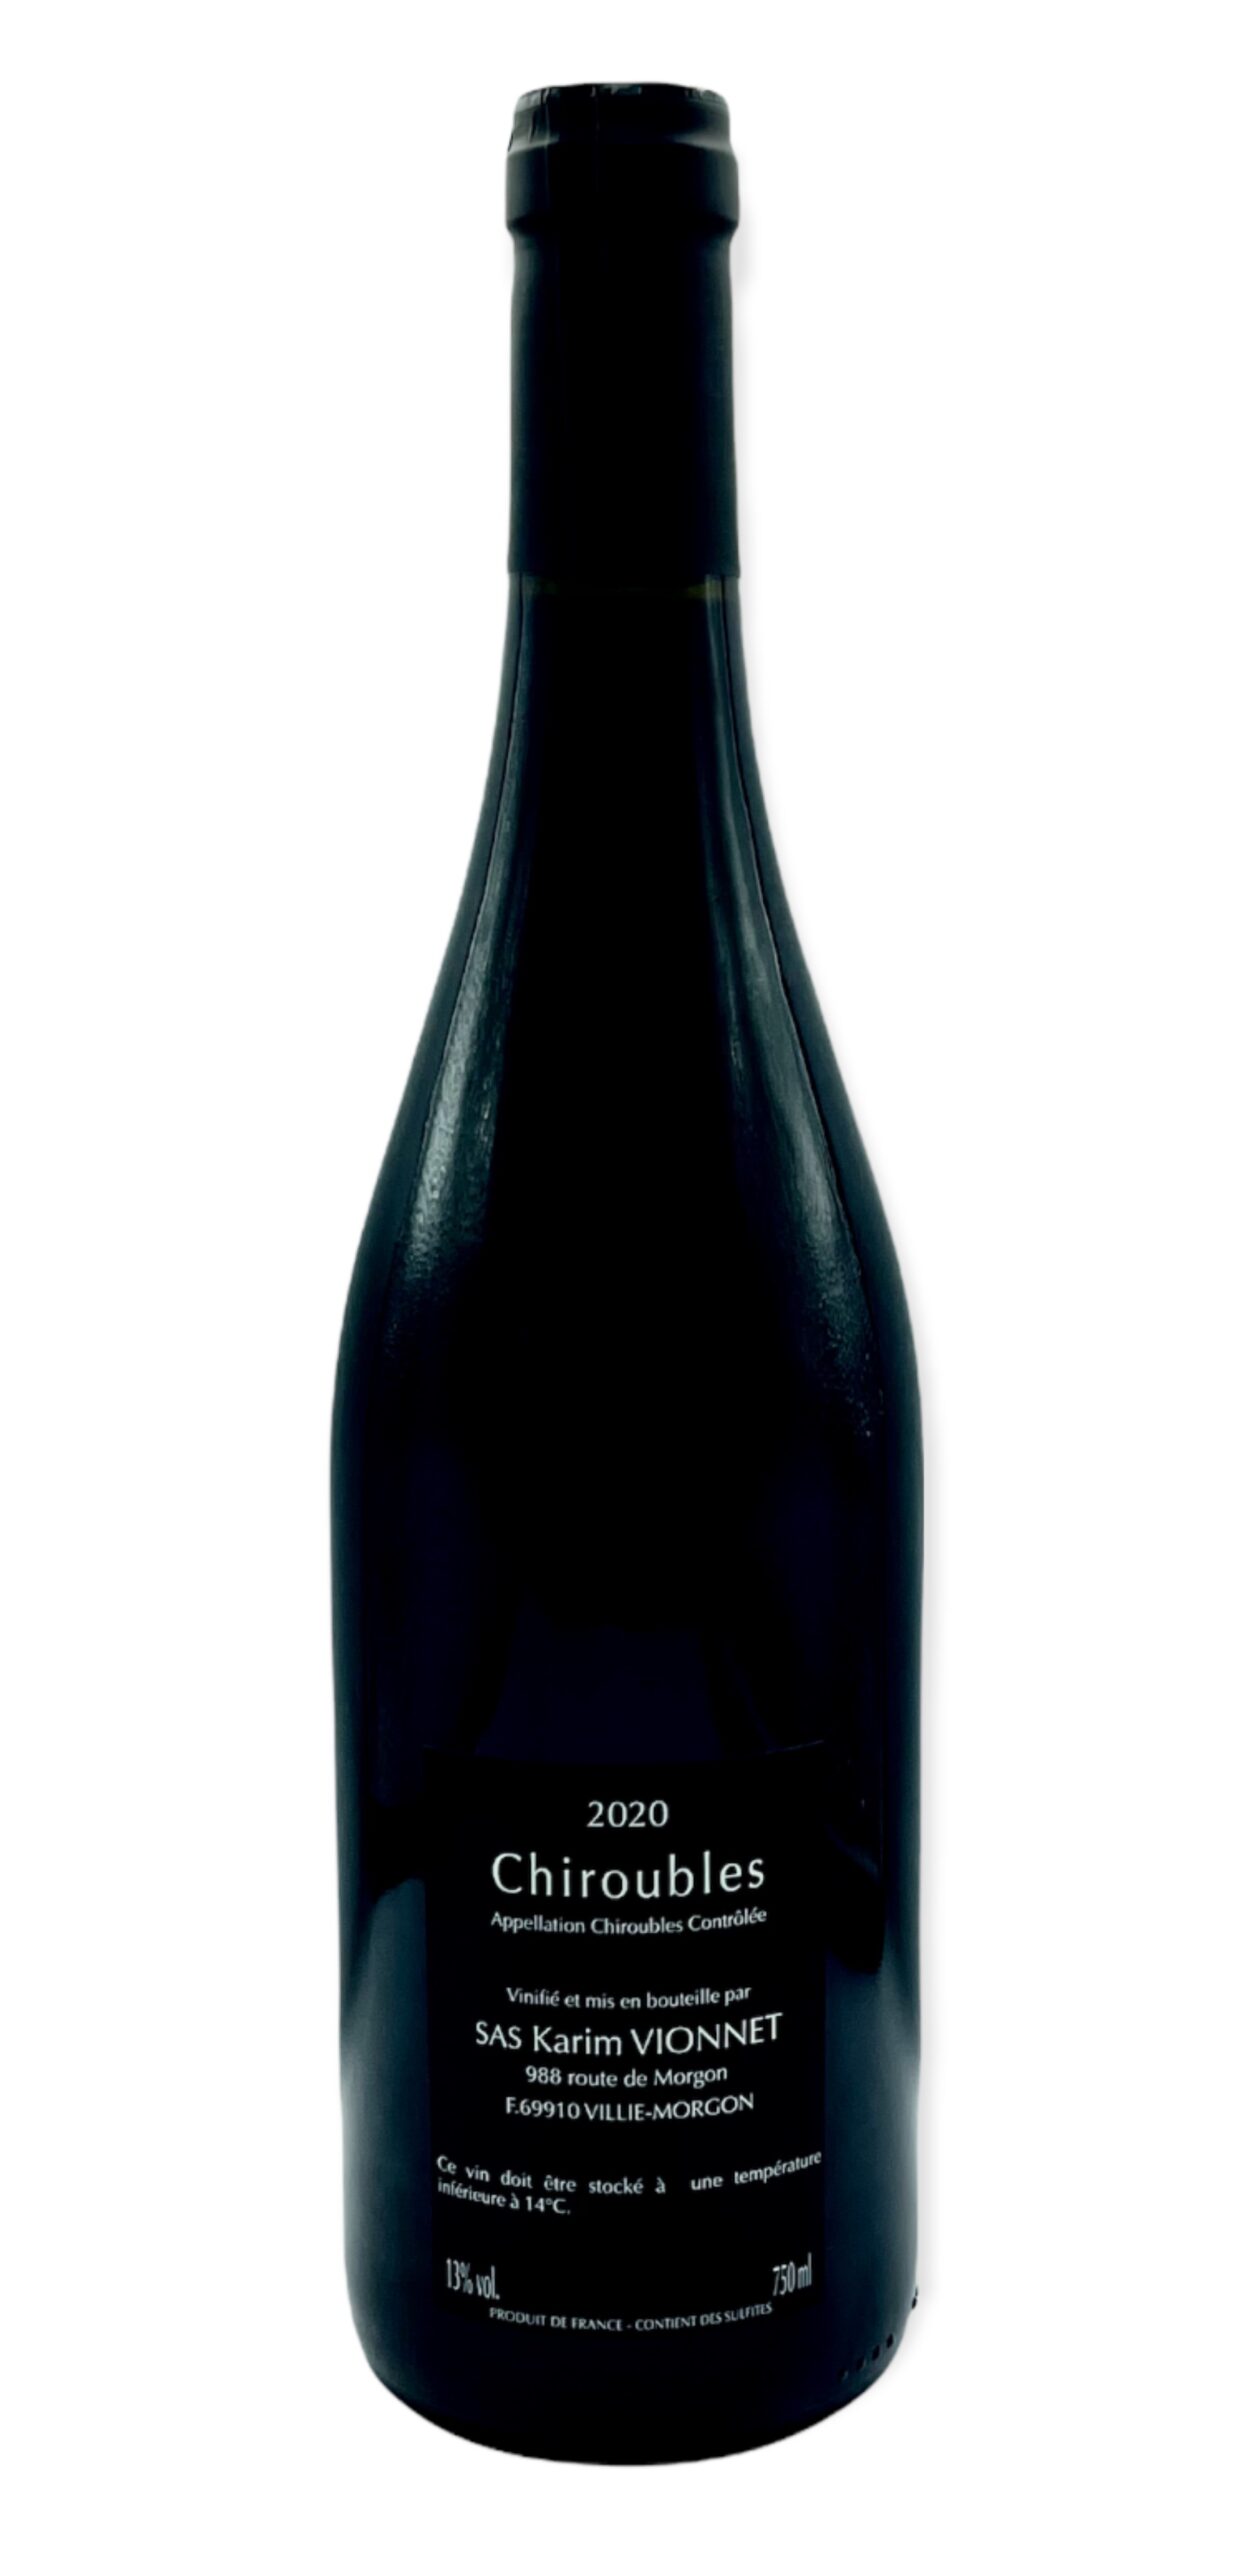 Chiroubles Vin de kav 2020, contre étiquette, Domaine Karim Vionnet